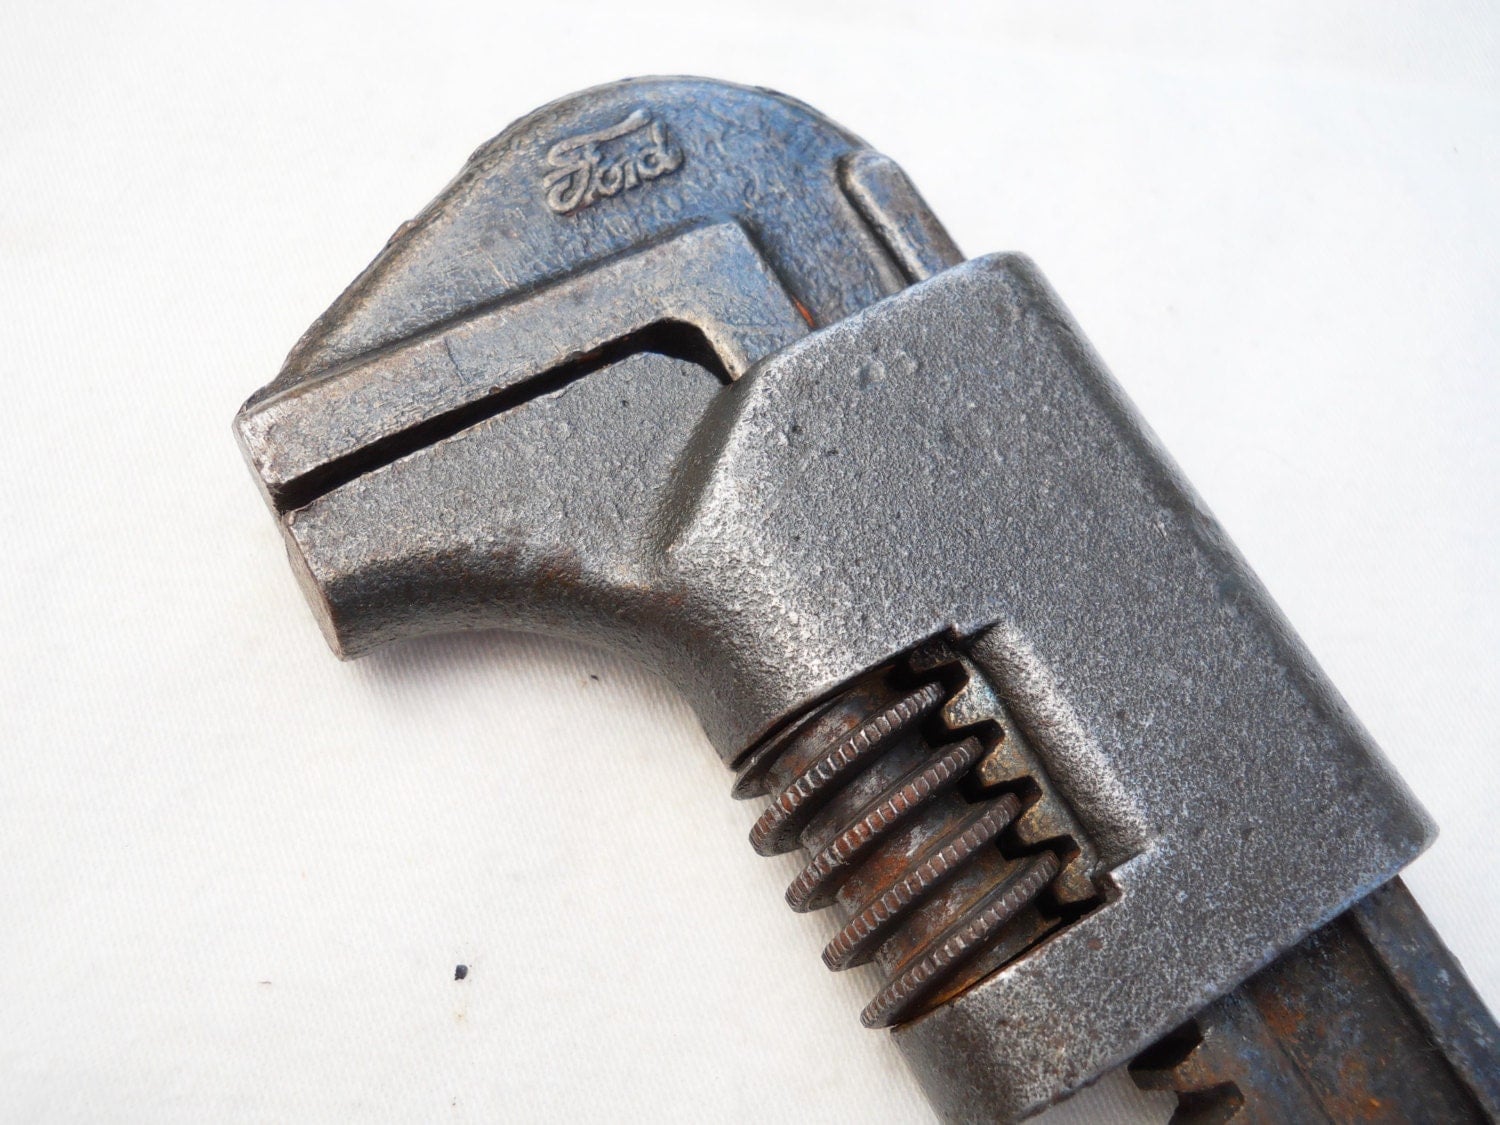 Vintage ford adjustable wrench